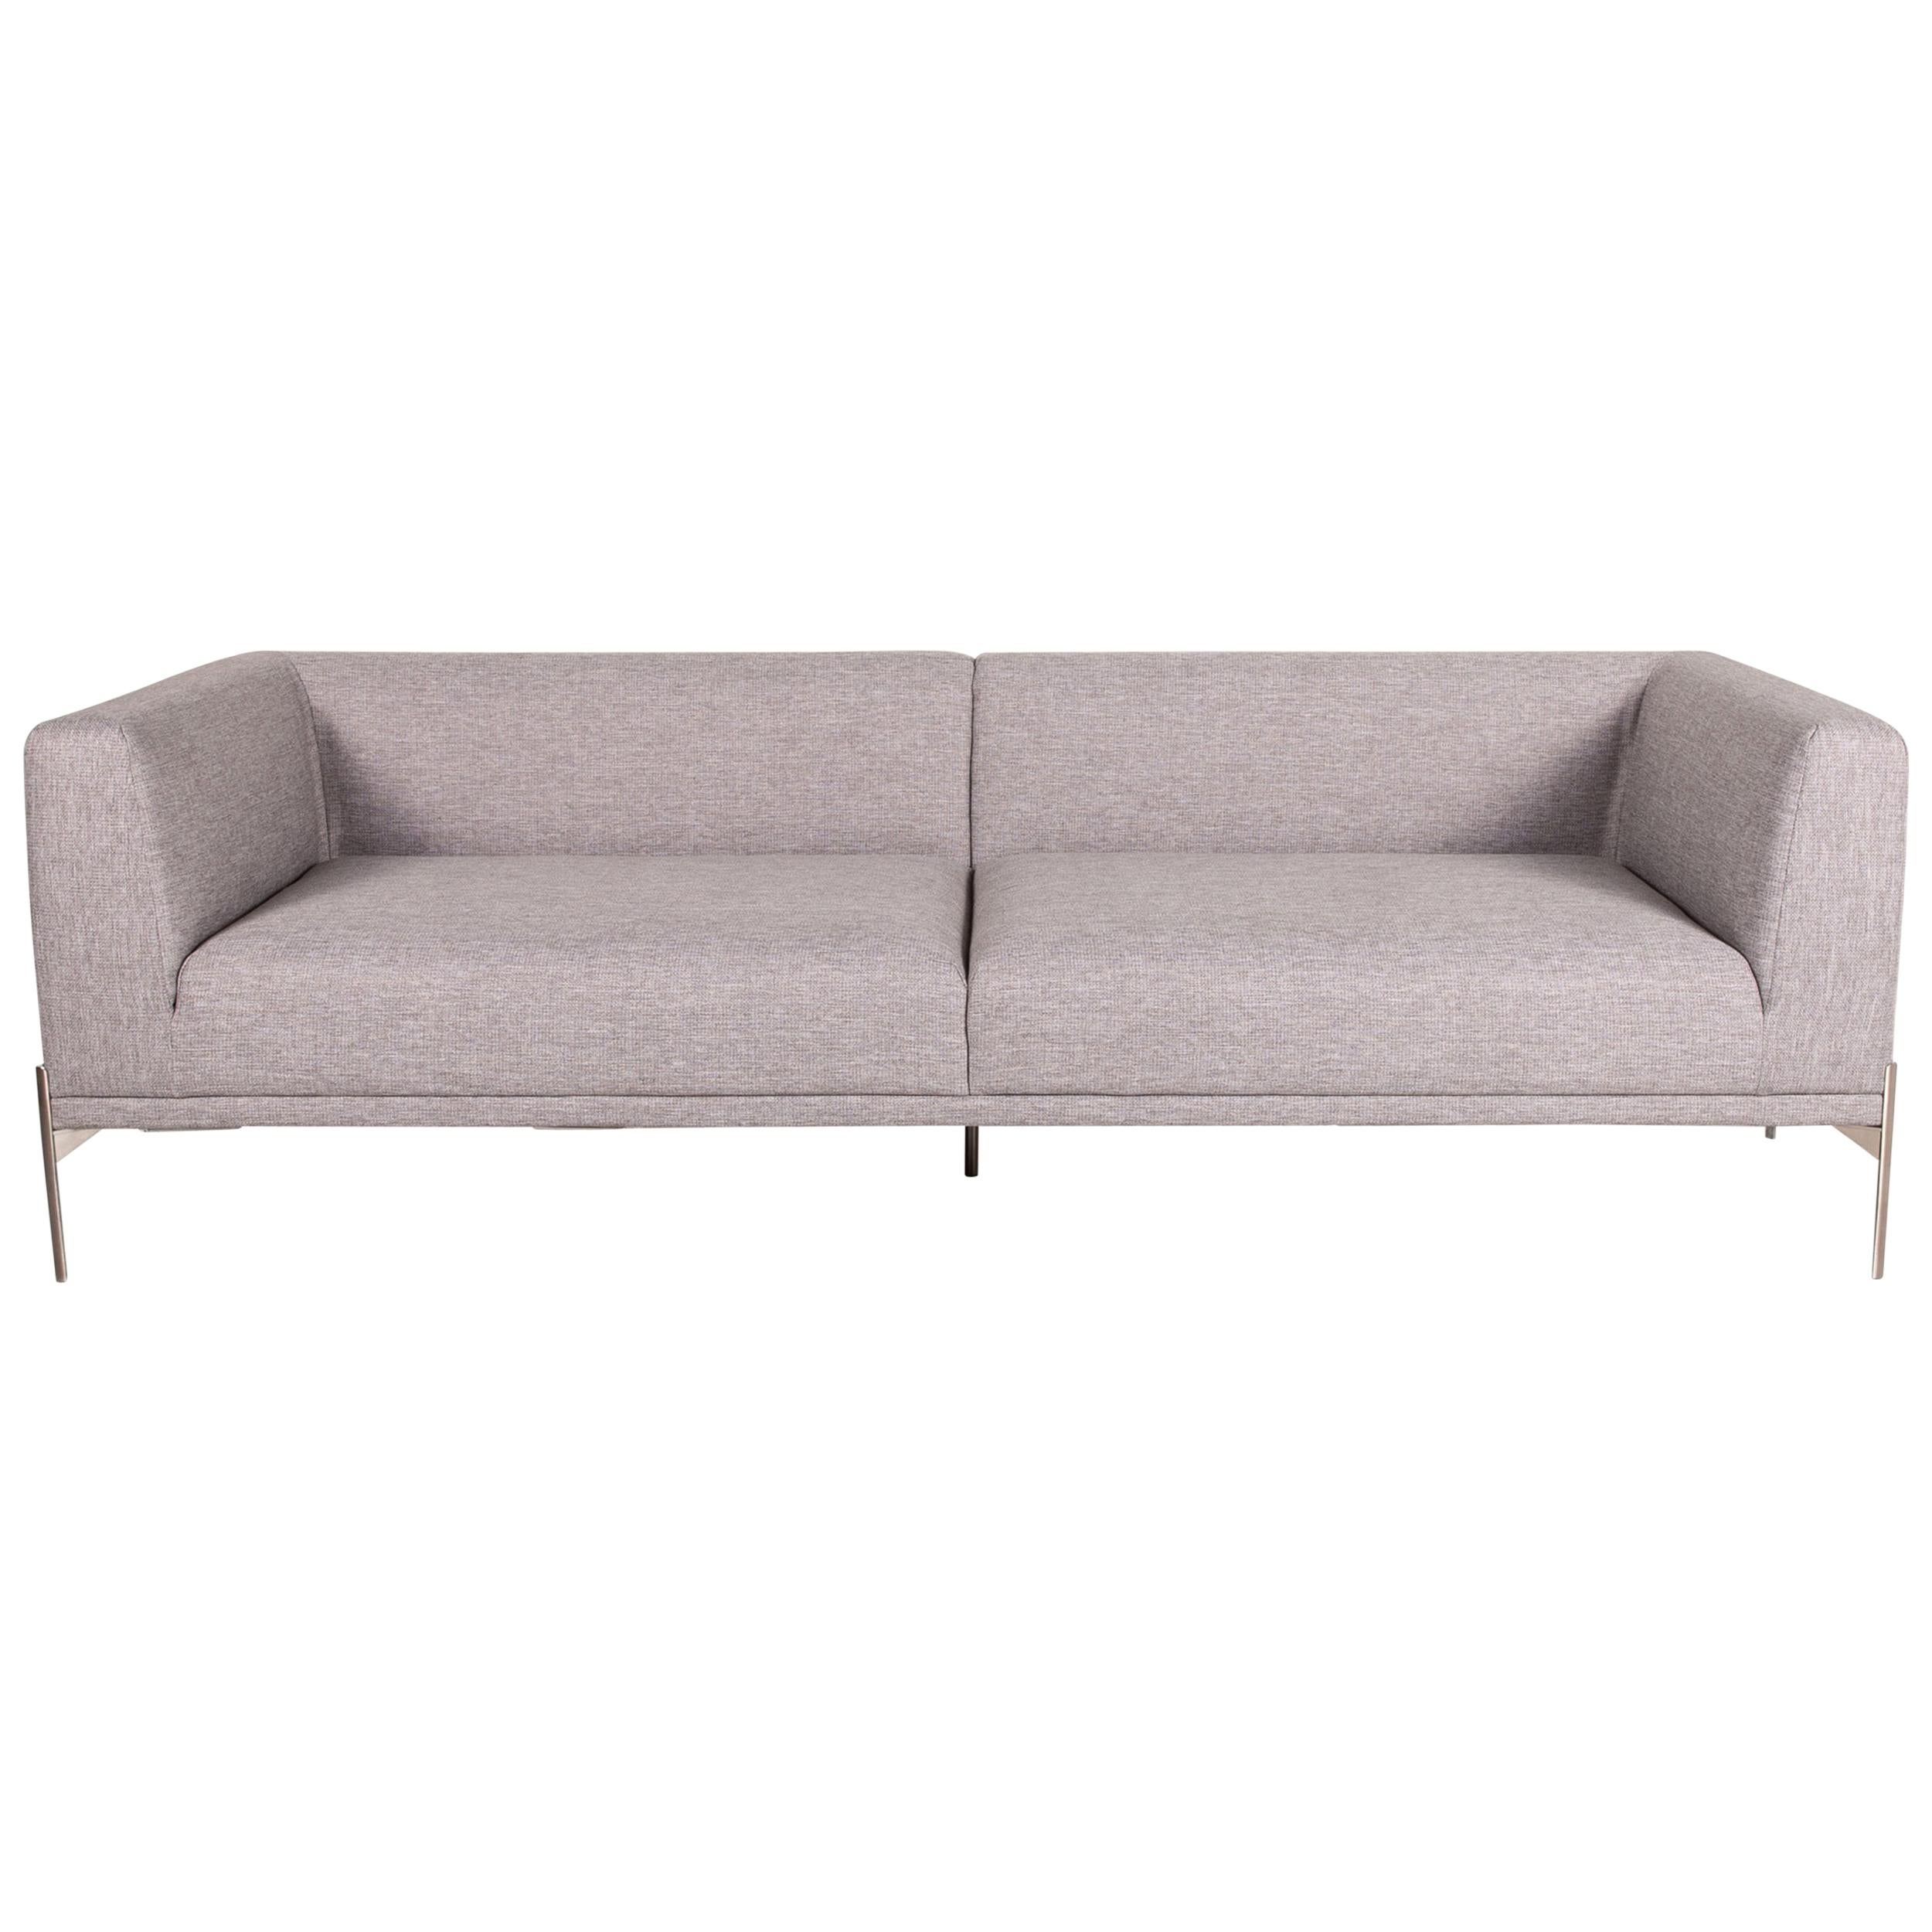 Bolia Caisa Fabric Sofa Gray Light Gray Three-Seater Couch